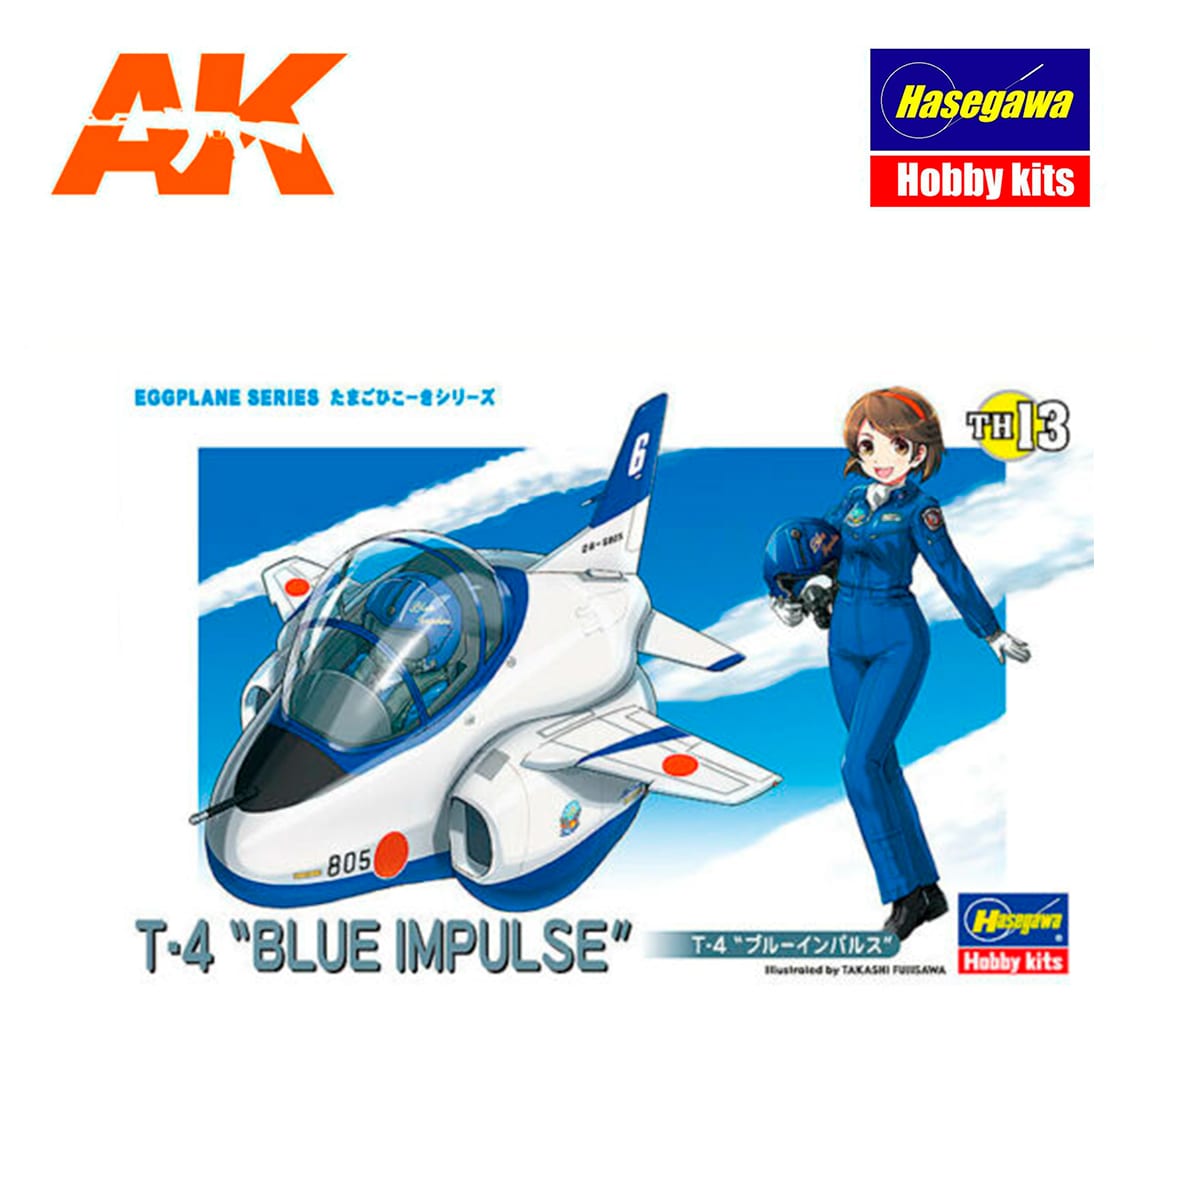 TH13-Egg Plane T-4 Blue Impulse